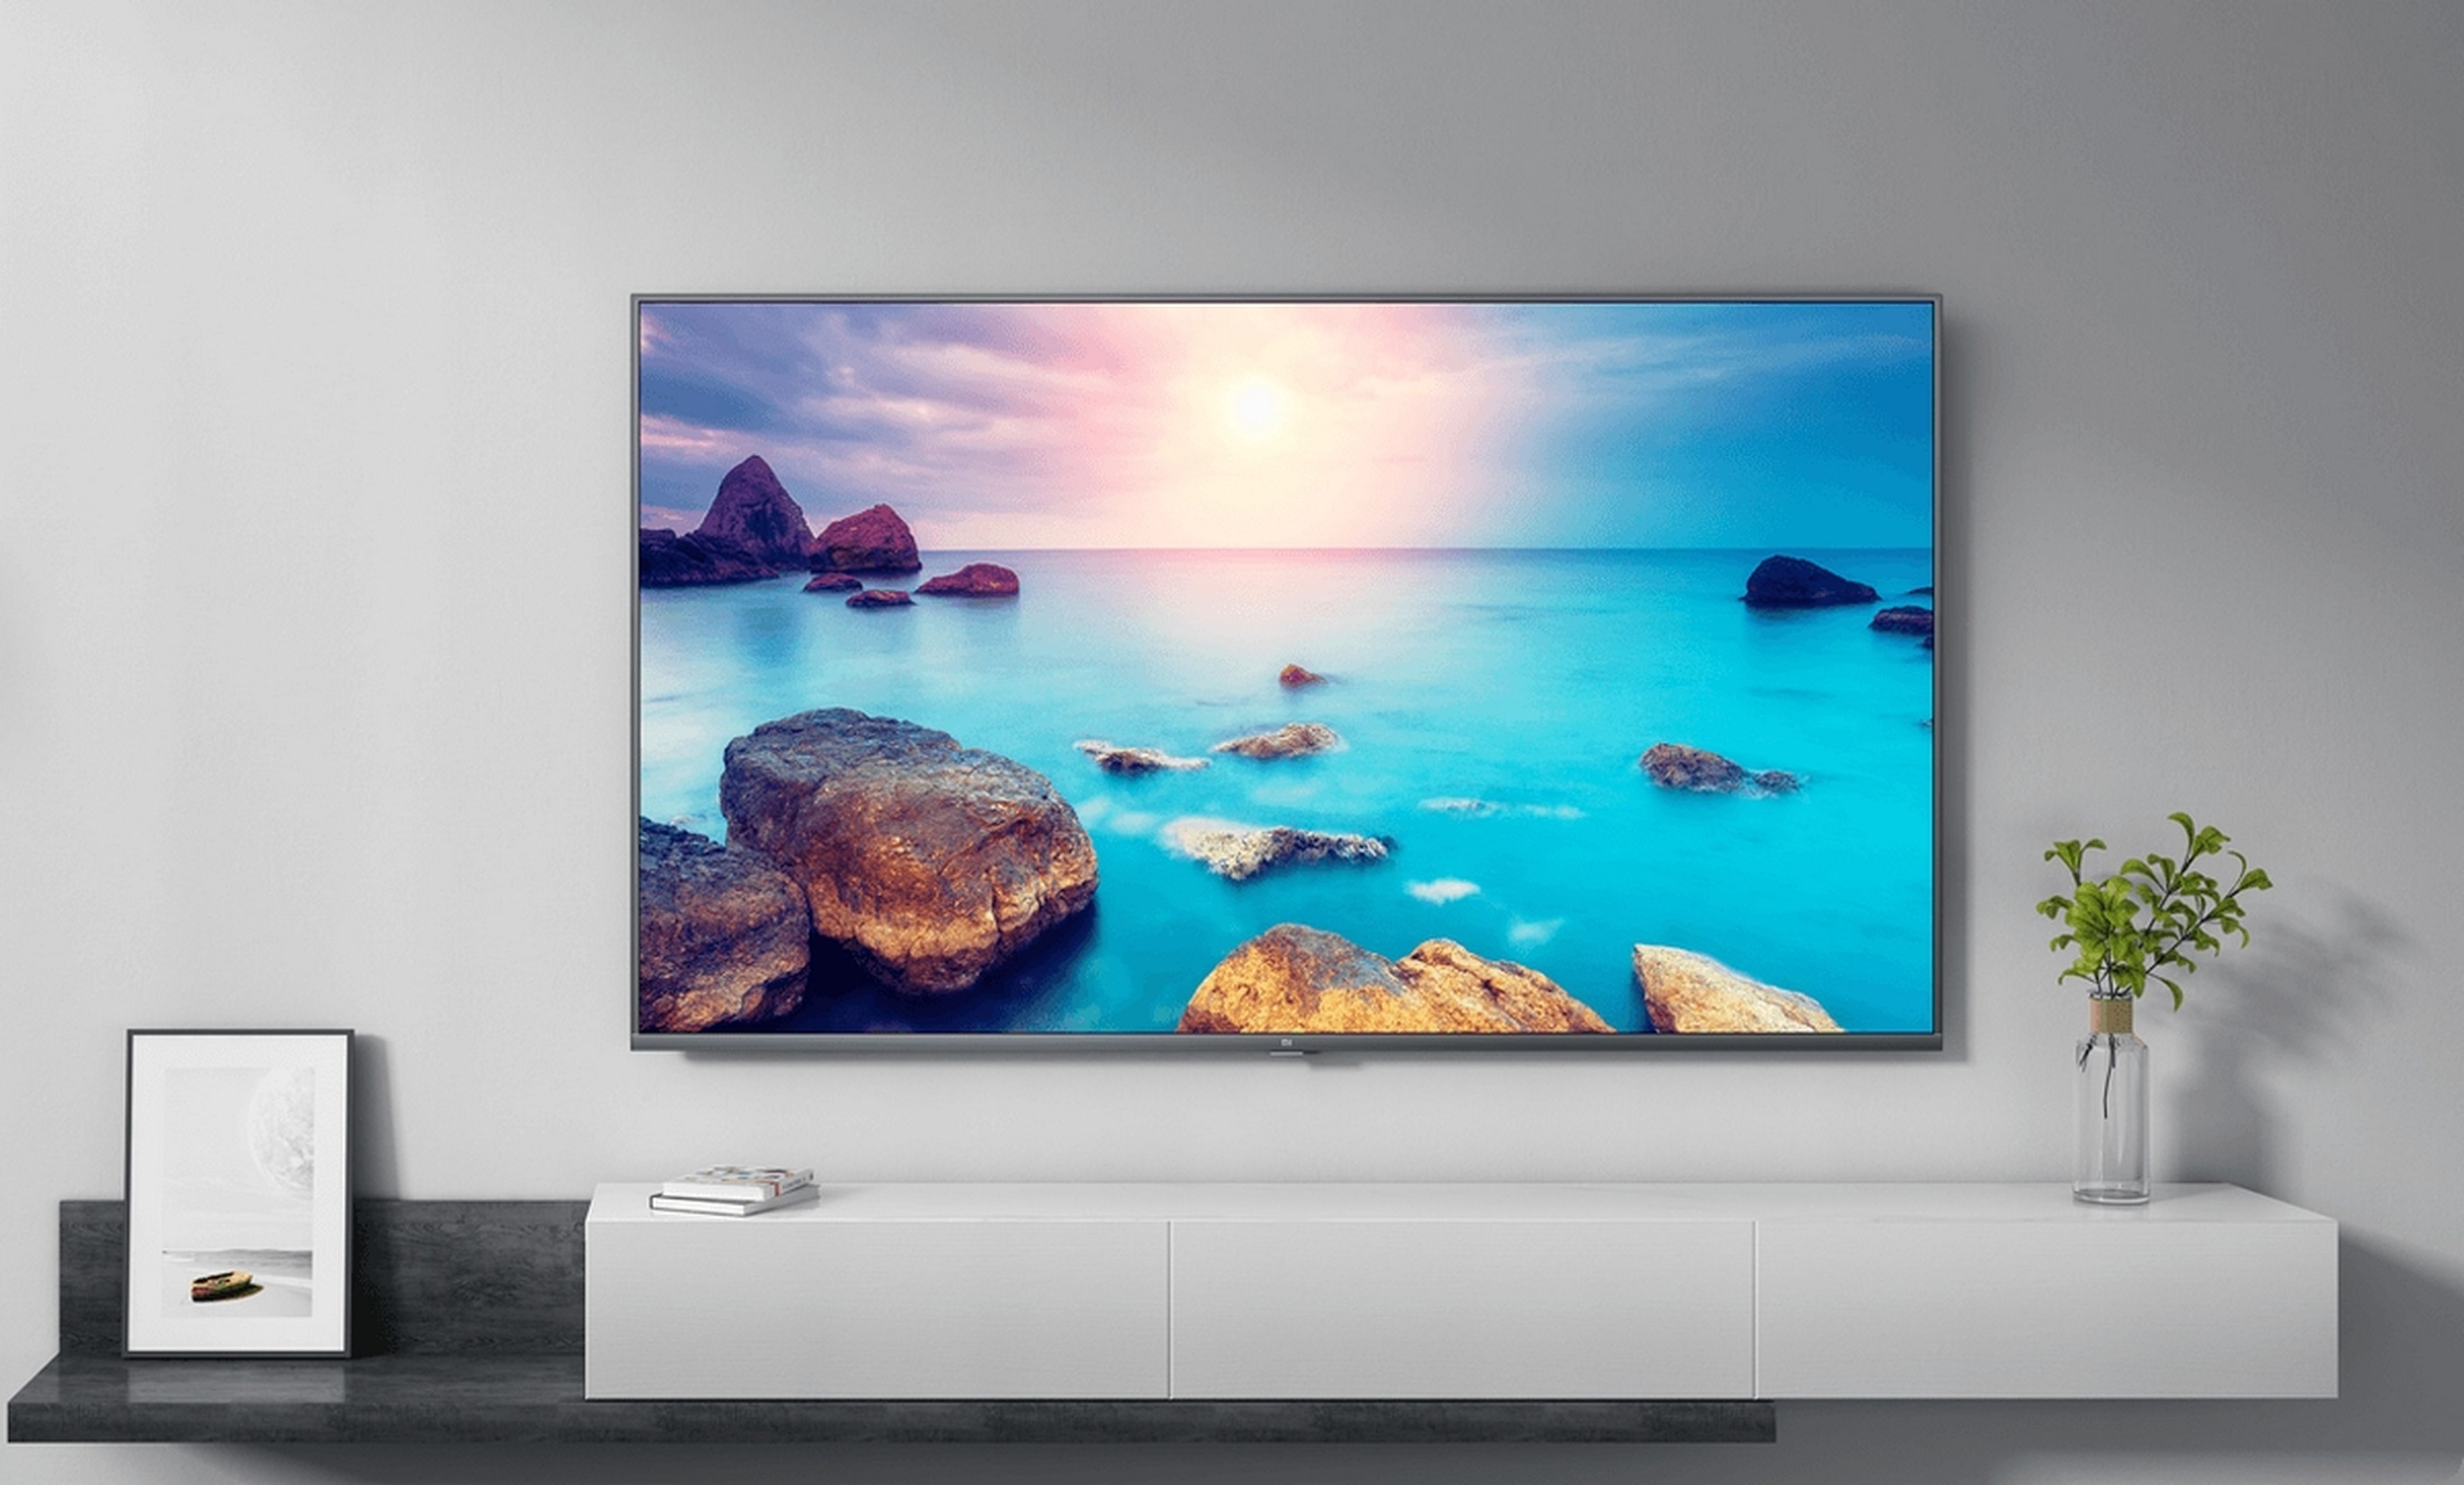 Mi TV 4S 65 es el nuevo televisor de 65 pulgadas de Xiaomi con 4K HDR 10+ y un precio rompedor